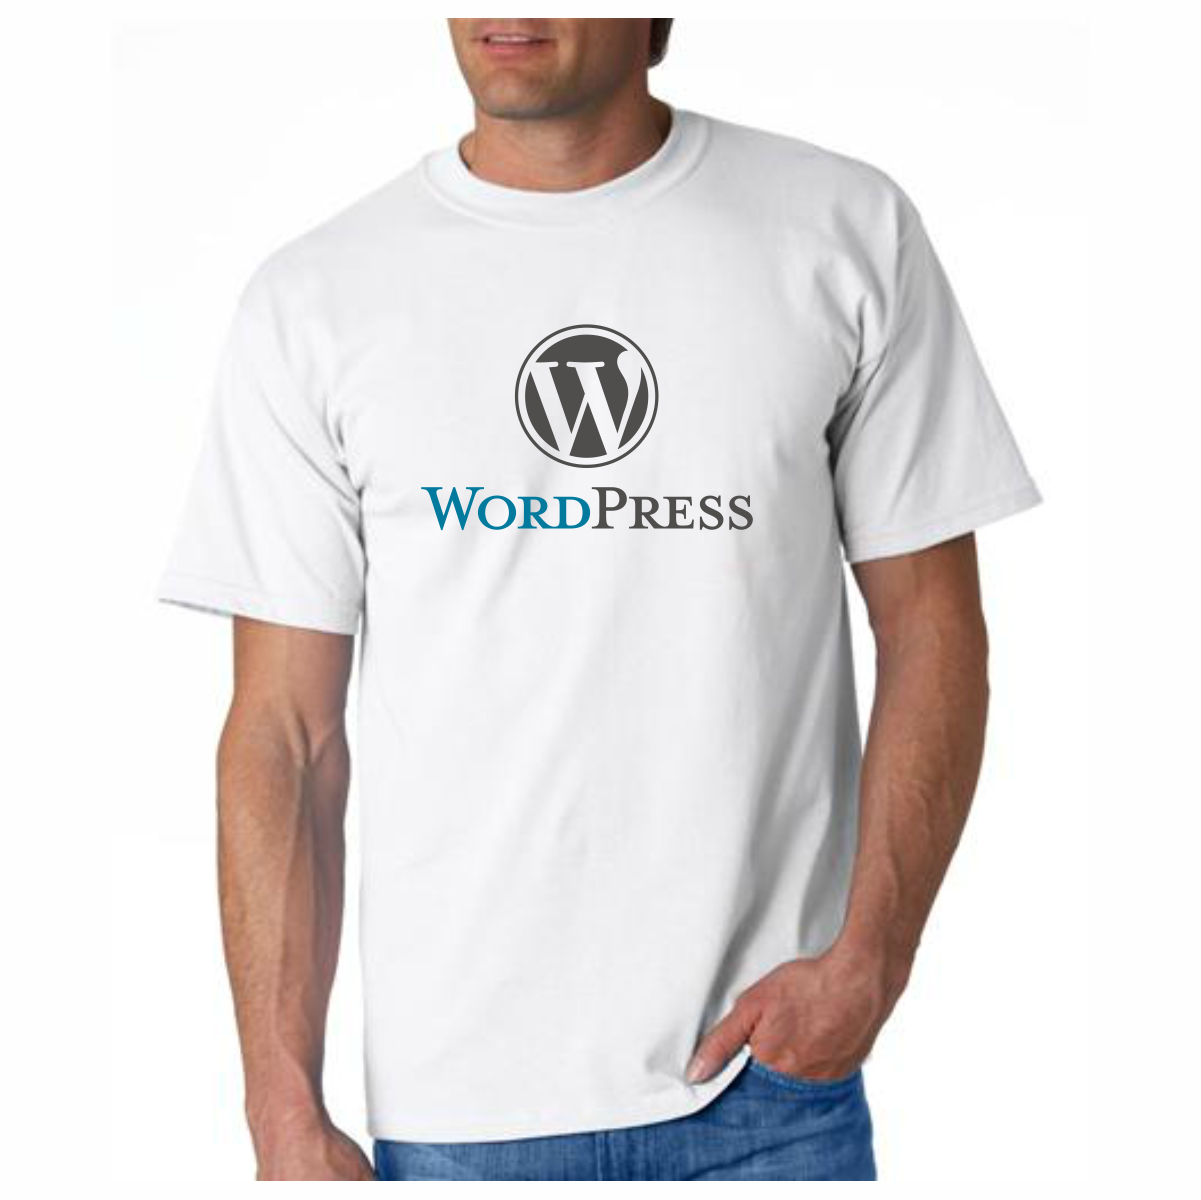 Open Office T-Shirt